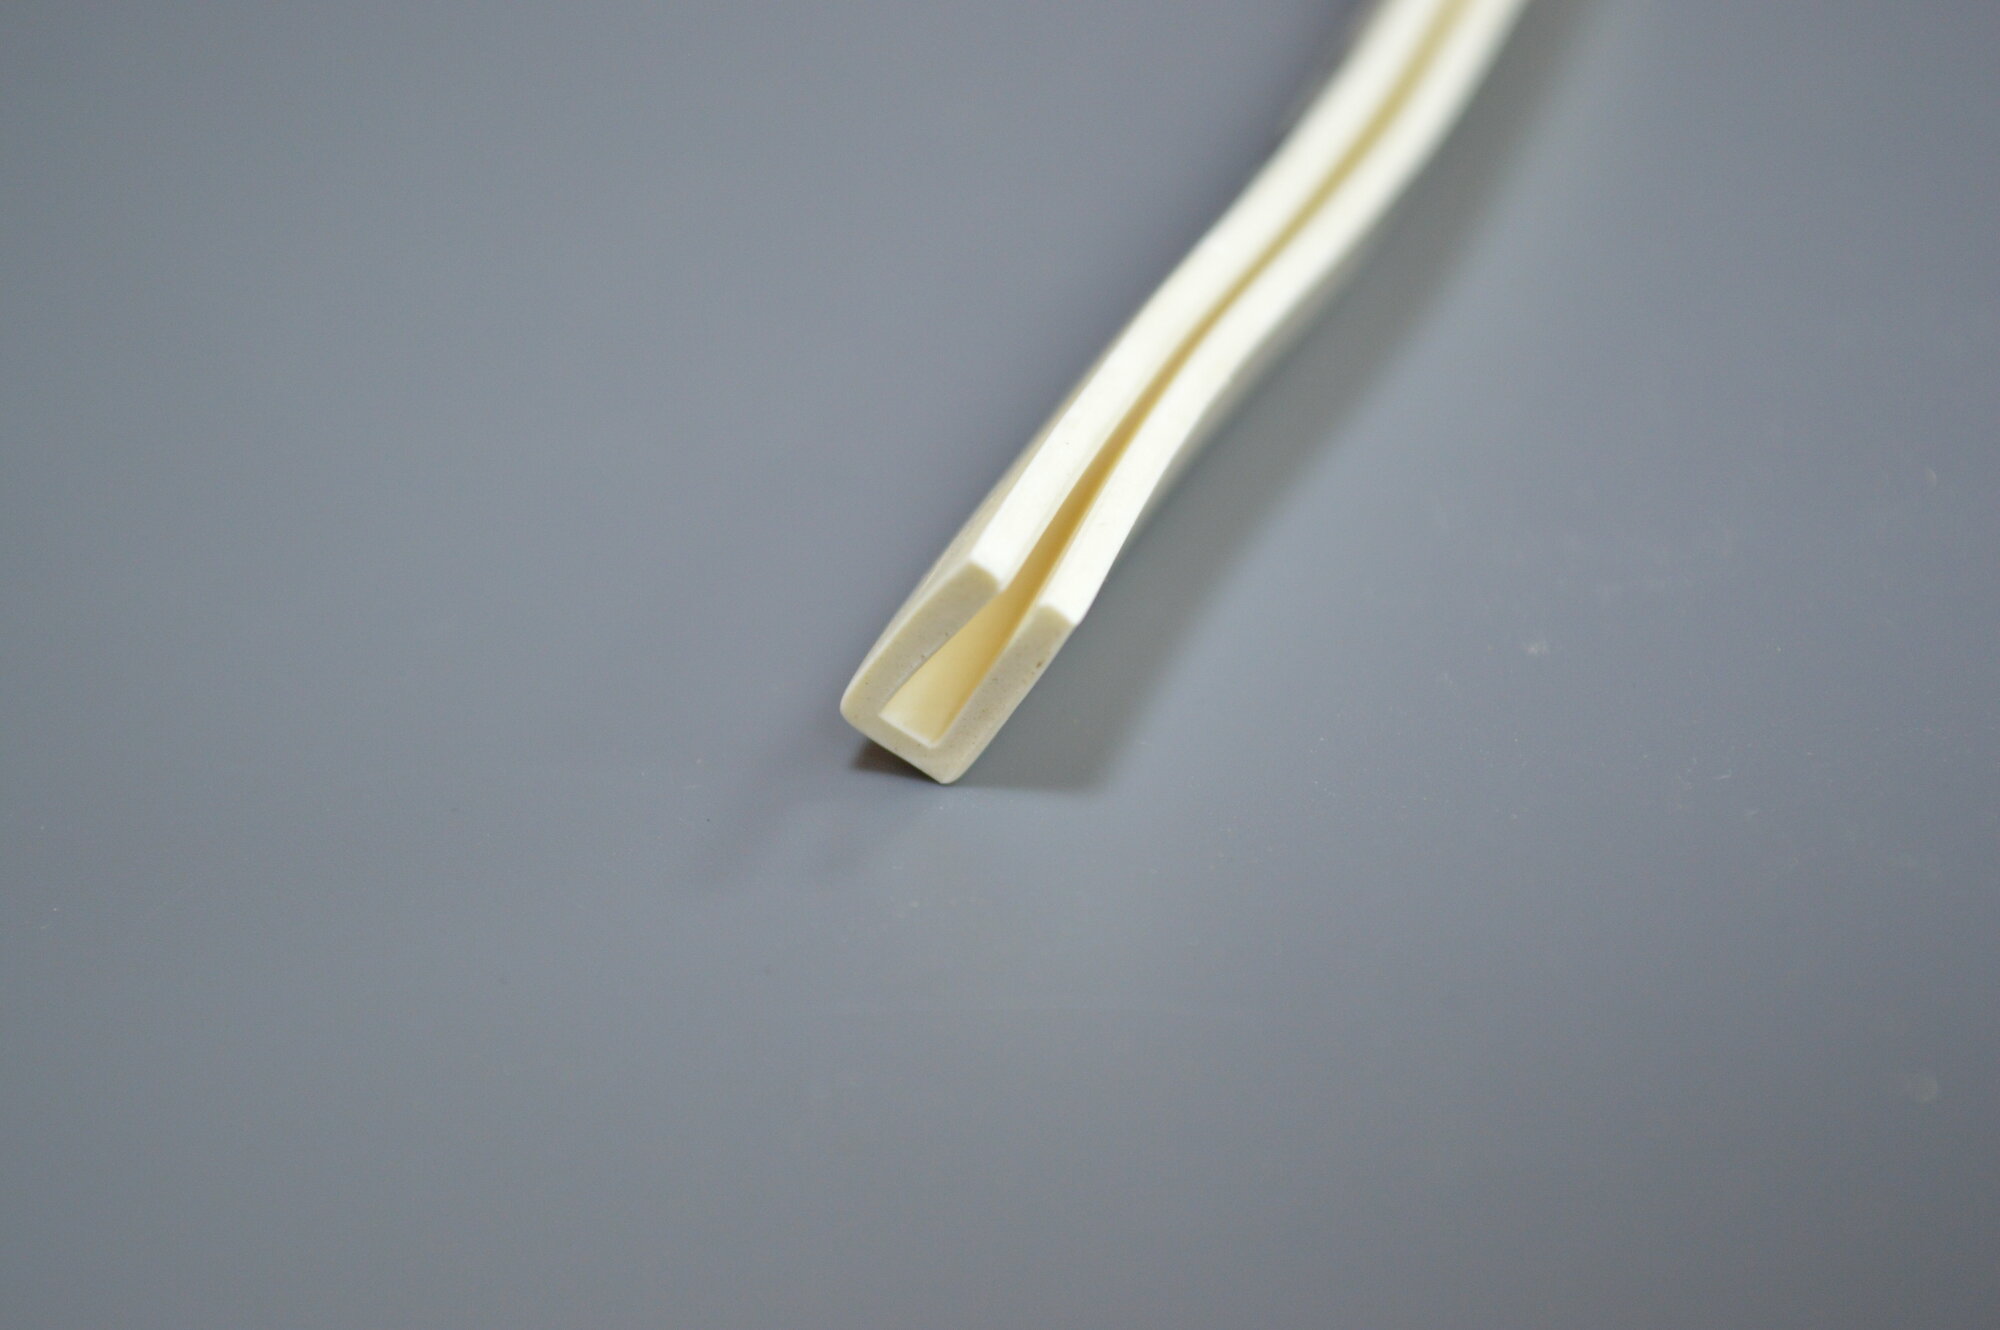 Профиль из силиконовой резины П-образный для уплотнения стекол и метала. Толщина стекла 10 мм. Длина 2 метра.